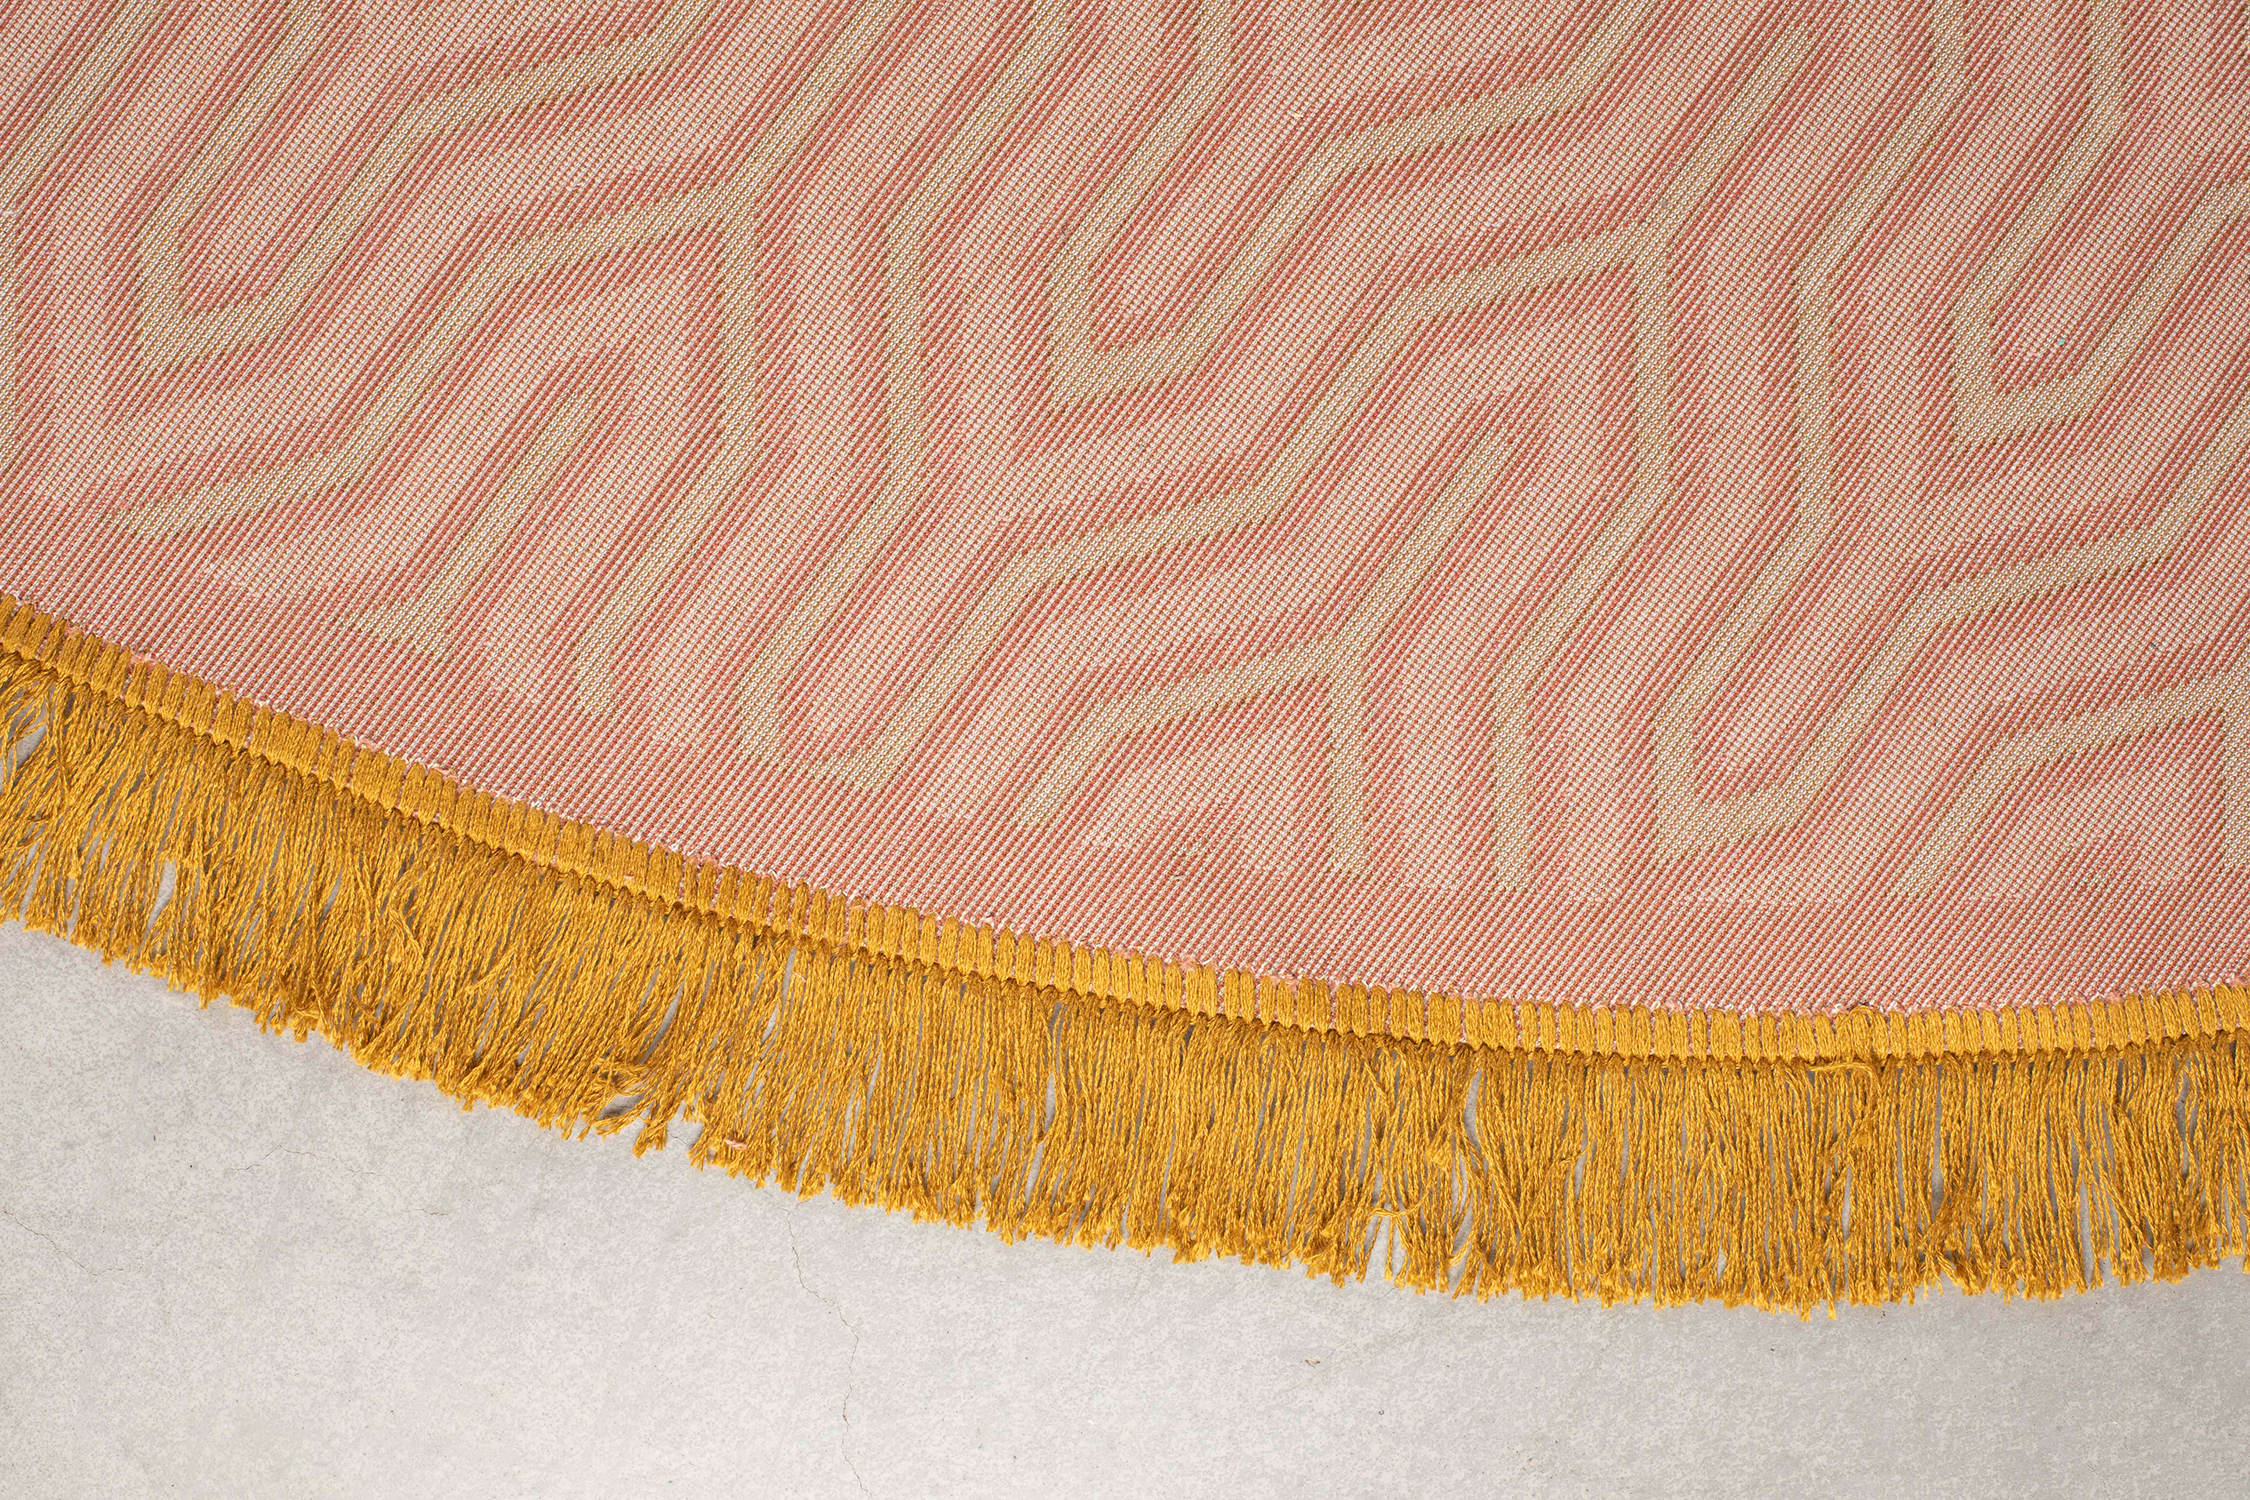 I FEEL SO SOFT Teppich rund in Pink präsentiert im Onlineshop von KAQTU Design AG. Teppich ist von Bold Monkey